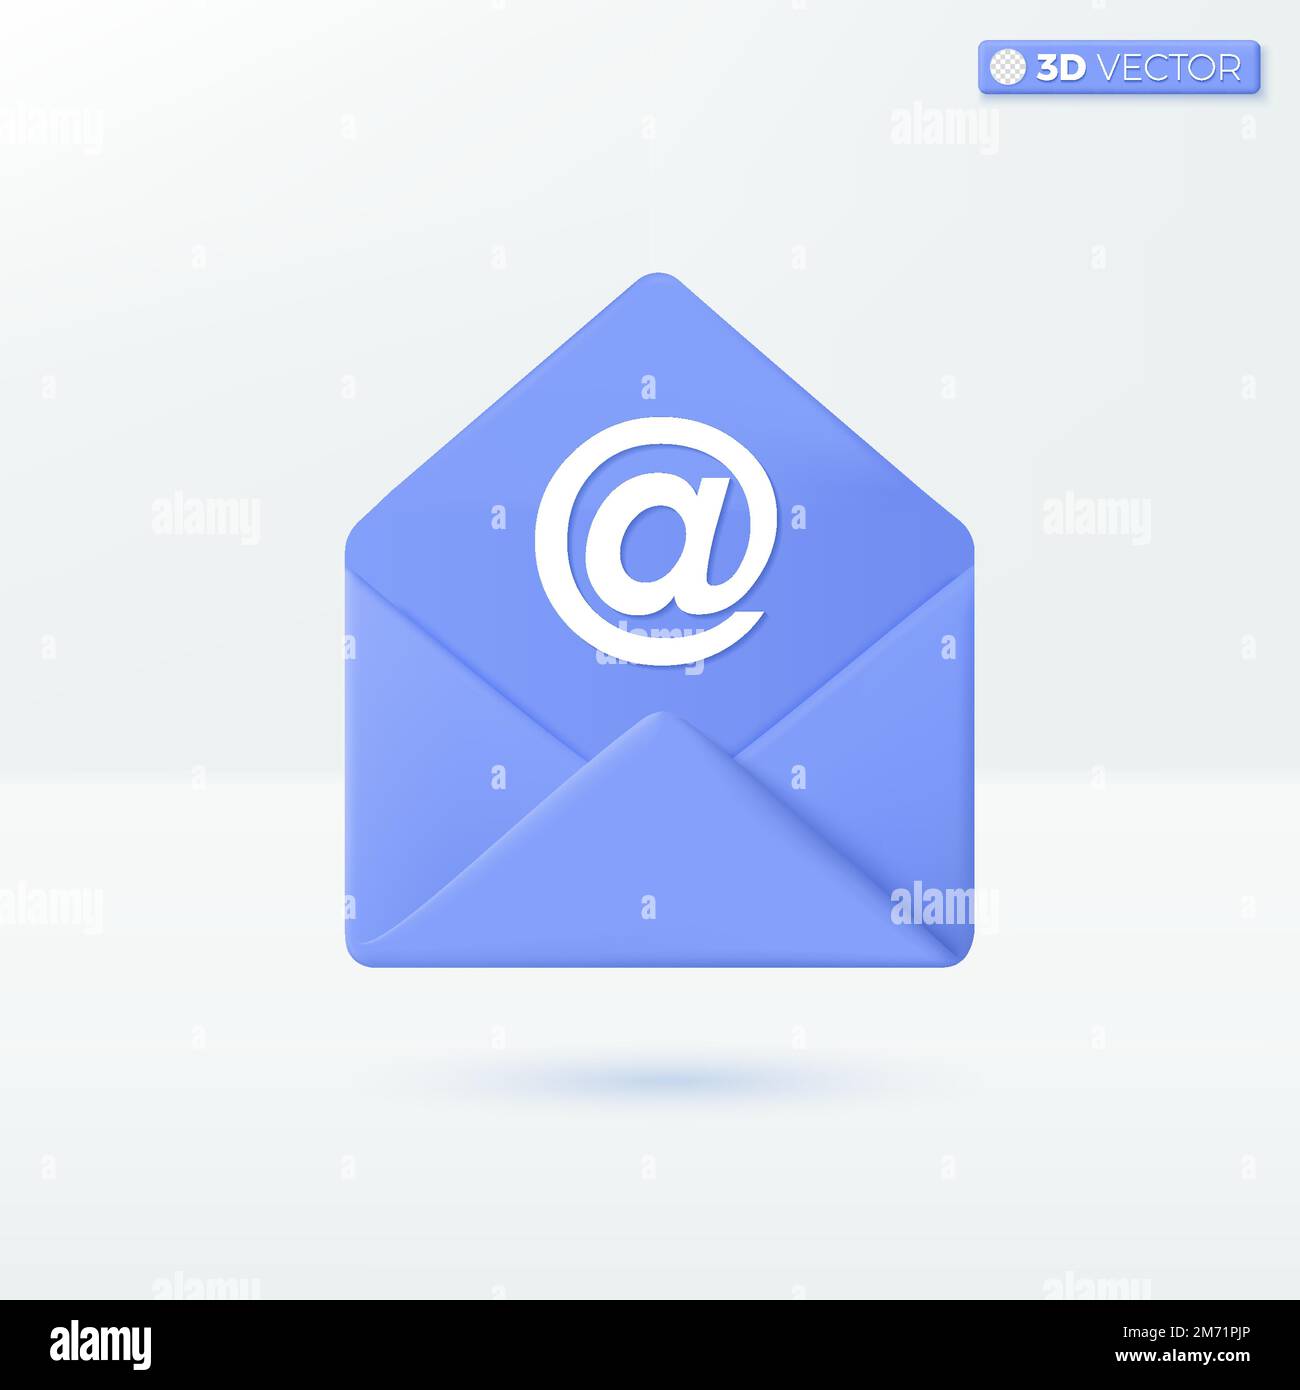 Enveloppe et symboles de l'icône du signe AT. Concept postal, invitation par courrier, approuvé. 3D illustrations vectorielles isolées. Style minimaliste pastel Illustration de Vecteur